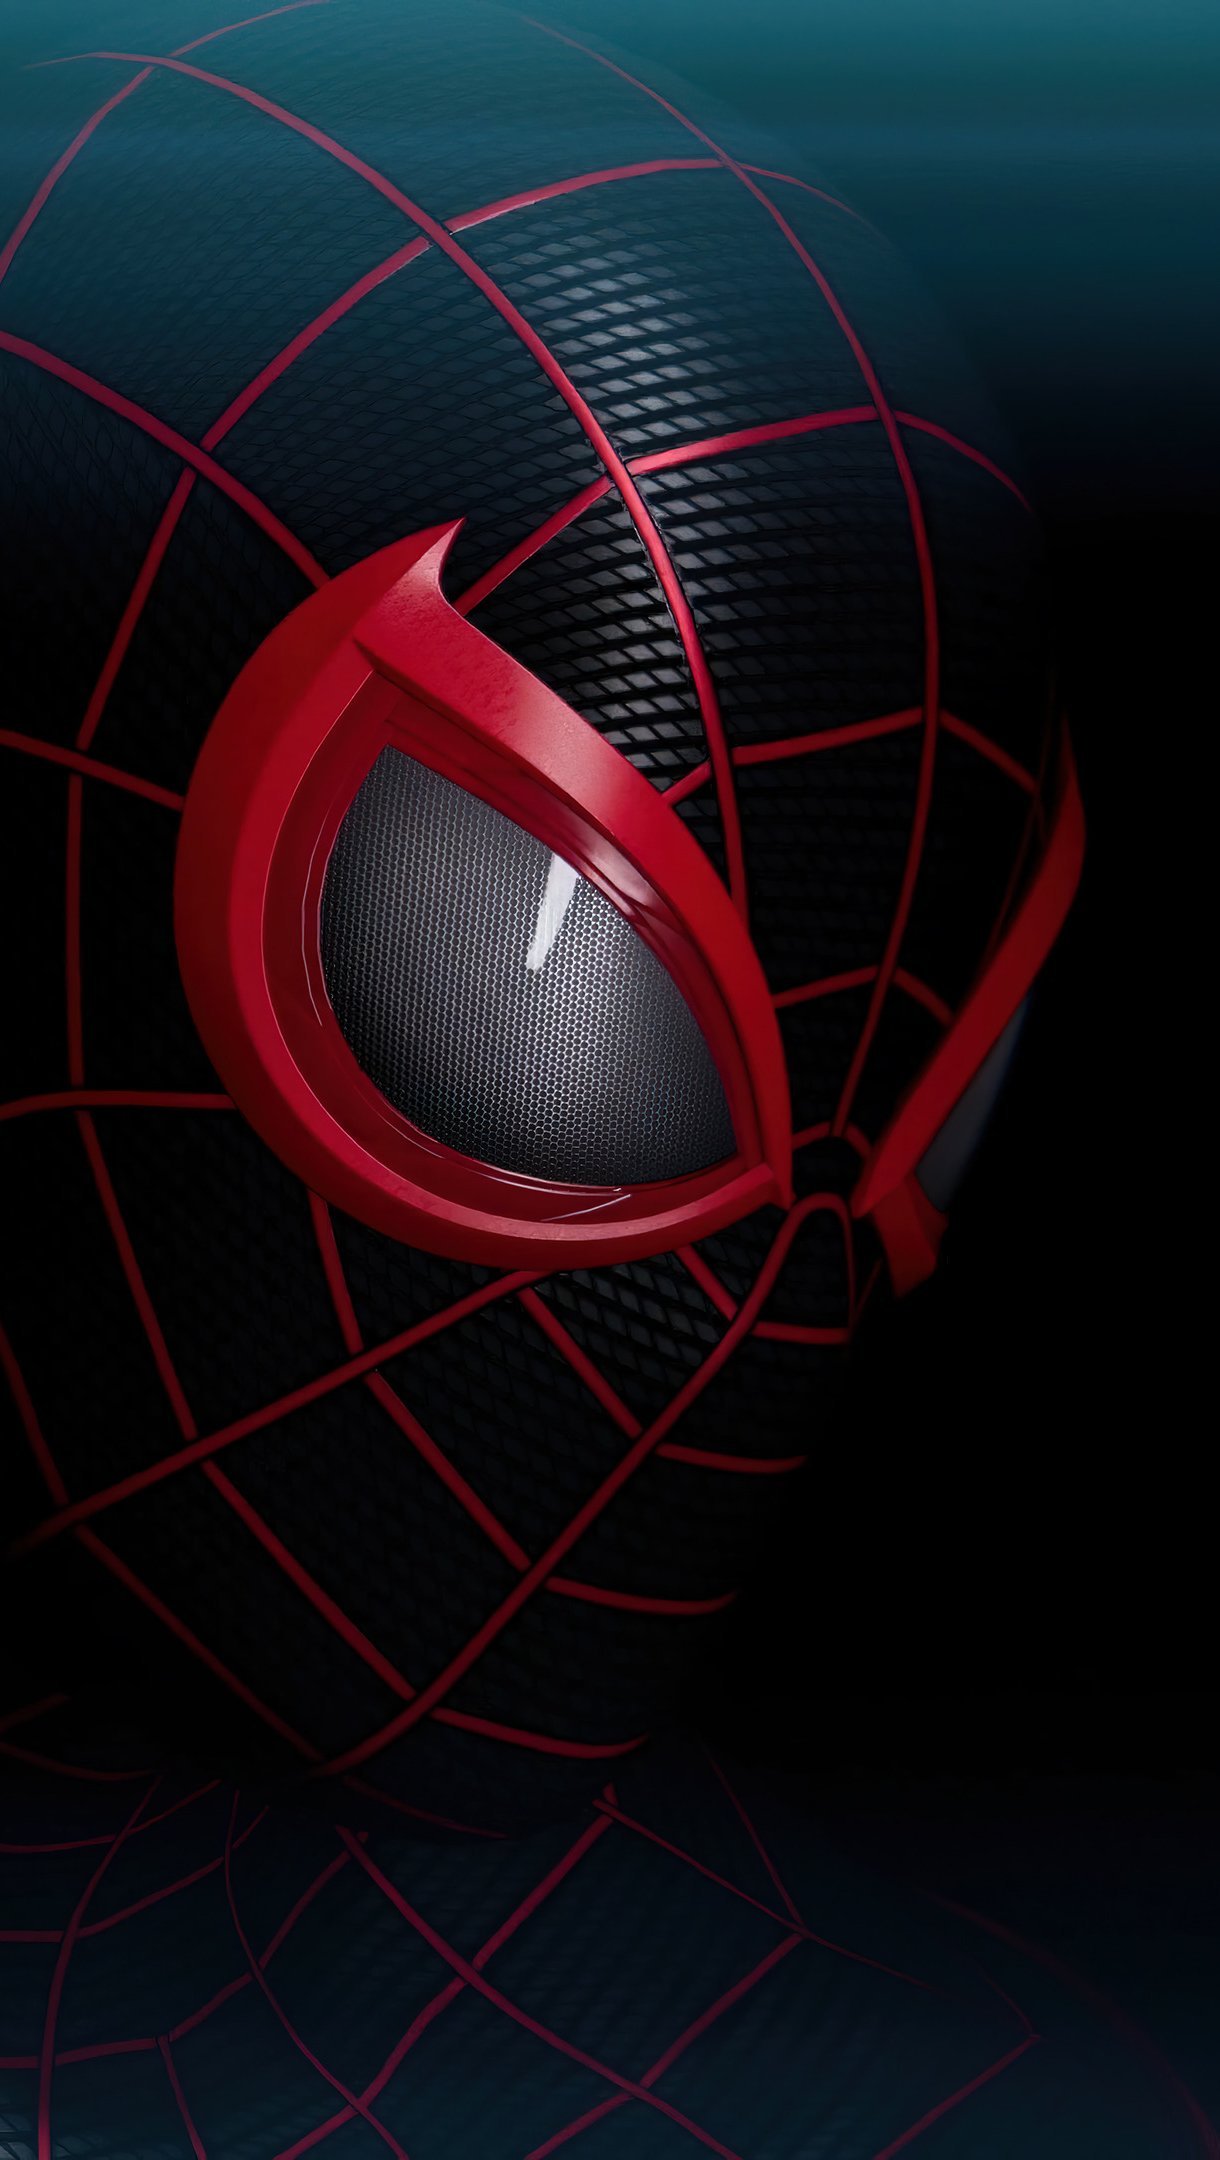 Hombre araña traje rojo y negro Fondo de pantalla 4k Ultra HD ID:8744